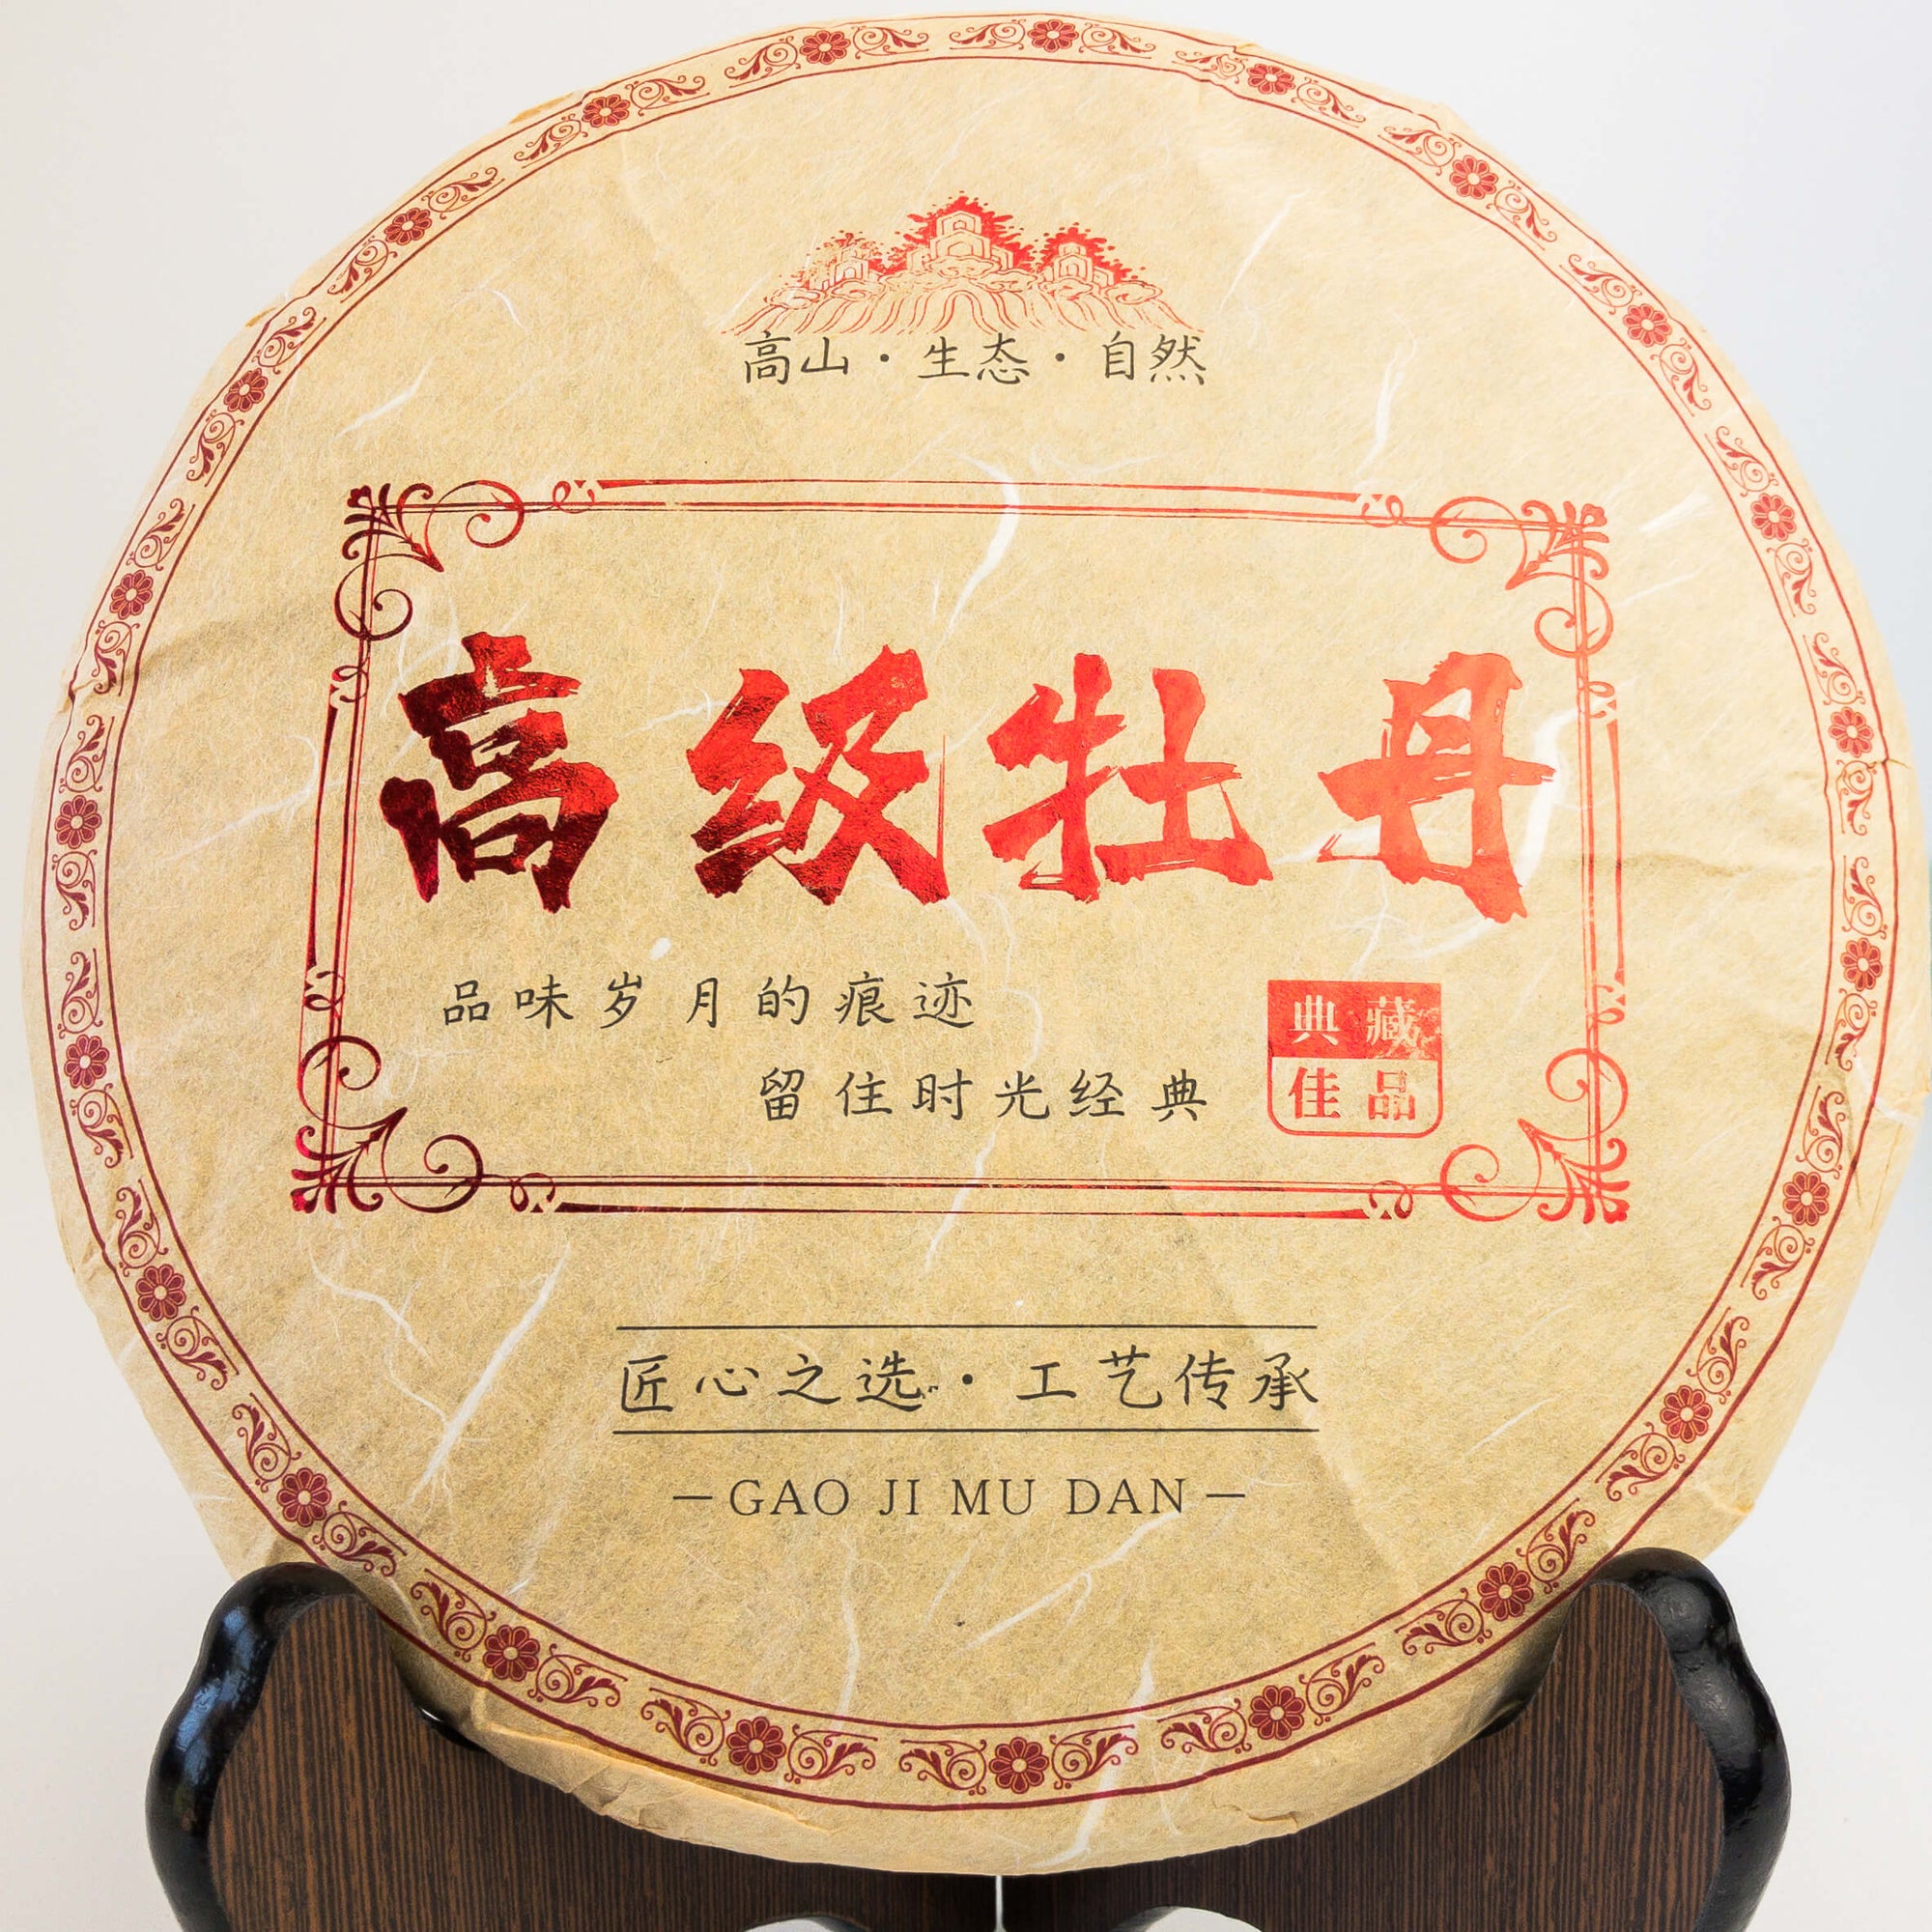 2012 Bai Mu Dan Aged White Tea